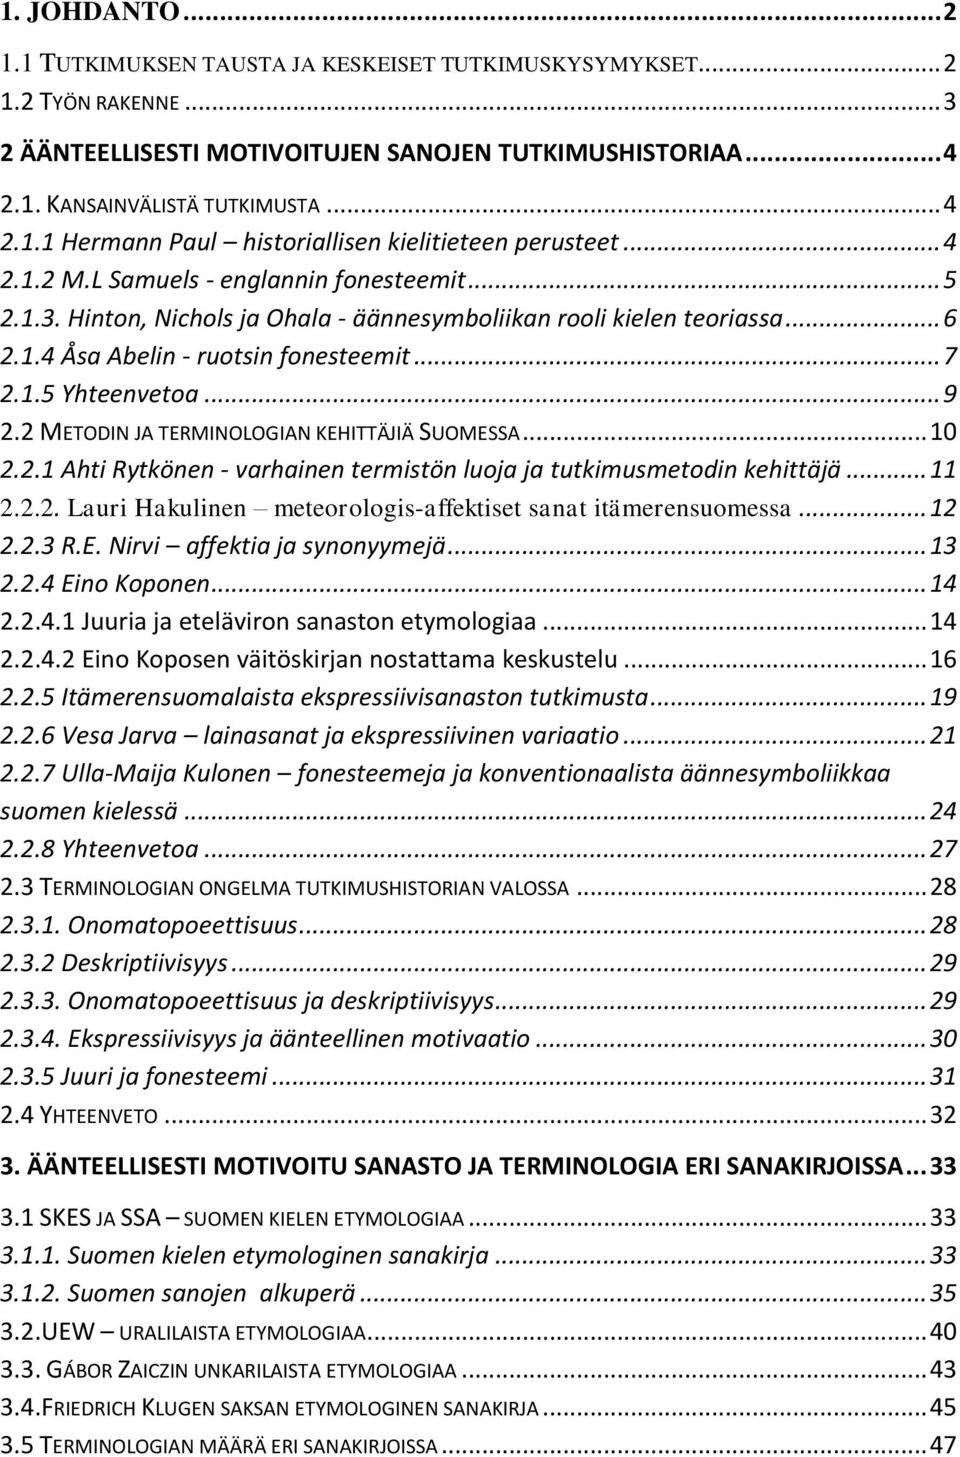 2 METODIN JA TERMINOLOGIAN KEHITTÄJIÄ SUOMESSA... 10 2.2.1 Ahti Rytkönen - varhainen termistön luoja ja tutkimusmetodin kehittäjä... 11 2.2.2. Lauri Hakulinen meteorologis-affektiset sanat itämerensuomessa.